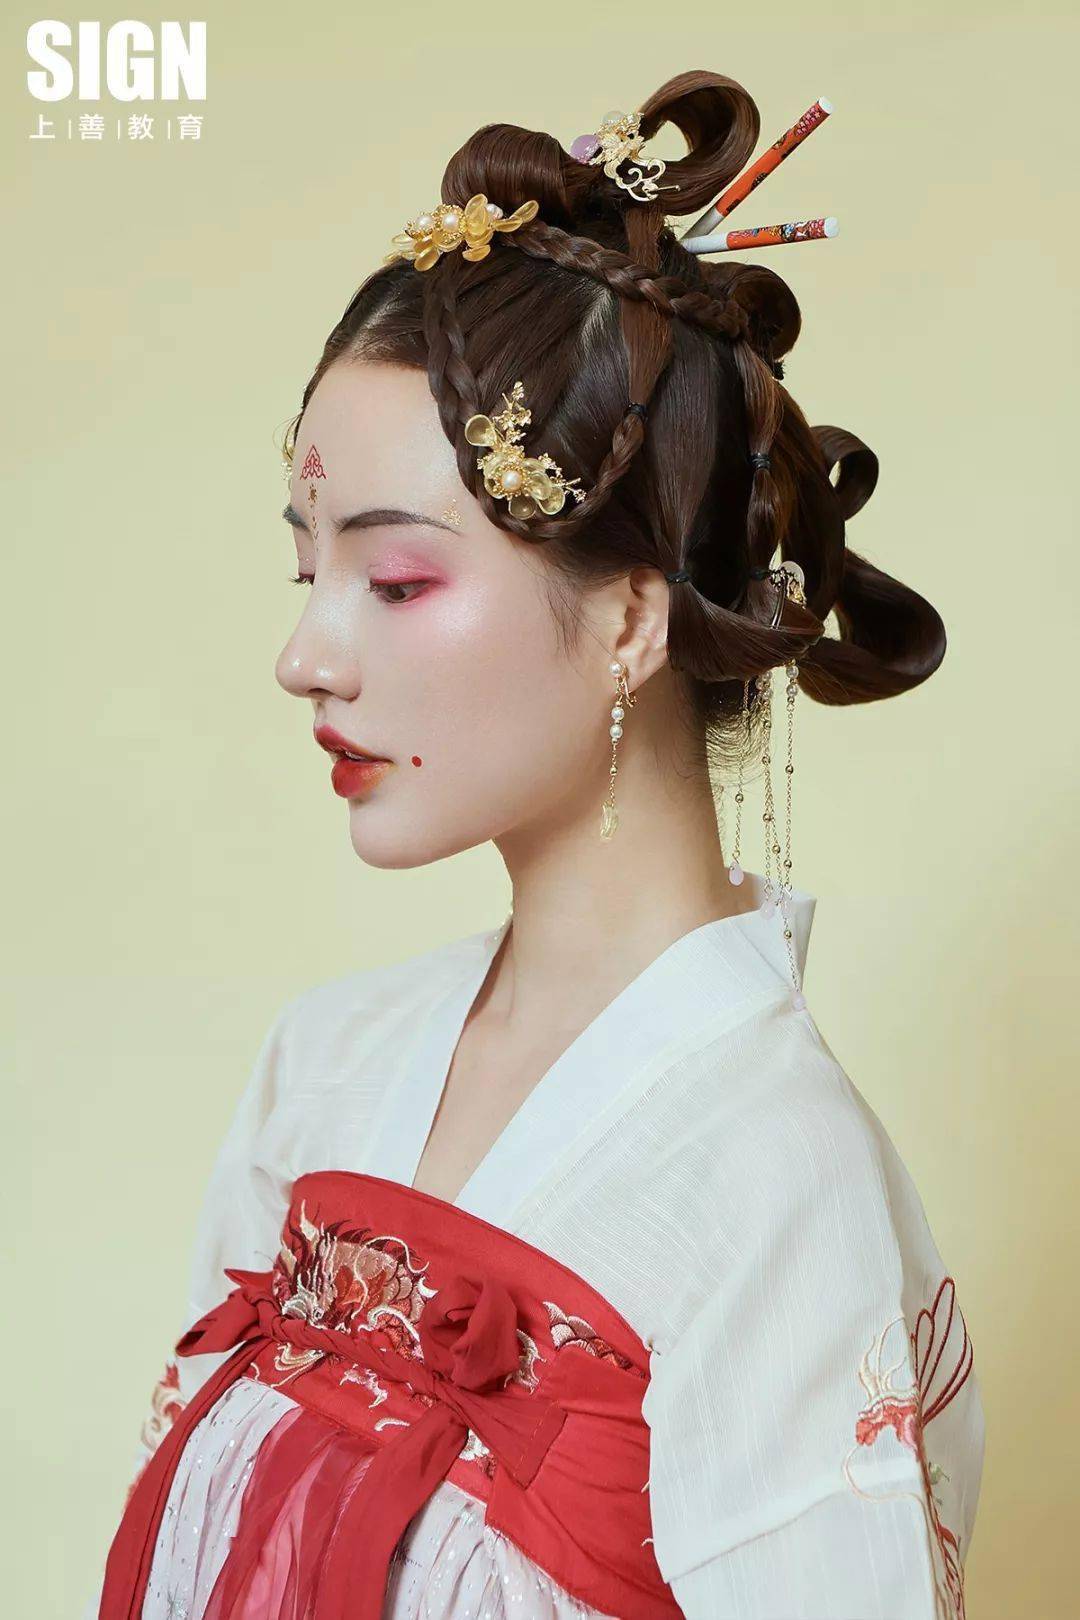 精美绣花纹样  妆容细腻灵动 演绎喜庆和美 新中式东方造型 螓首蛾眉